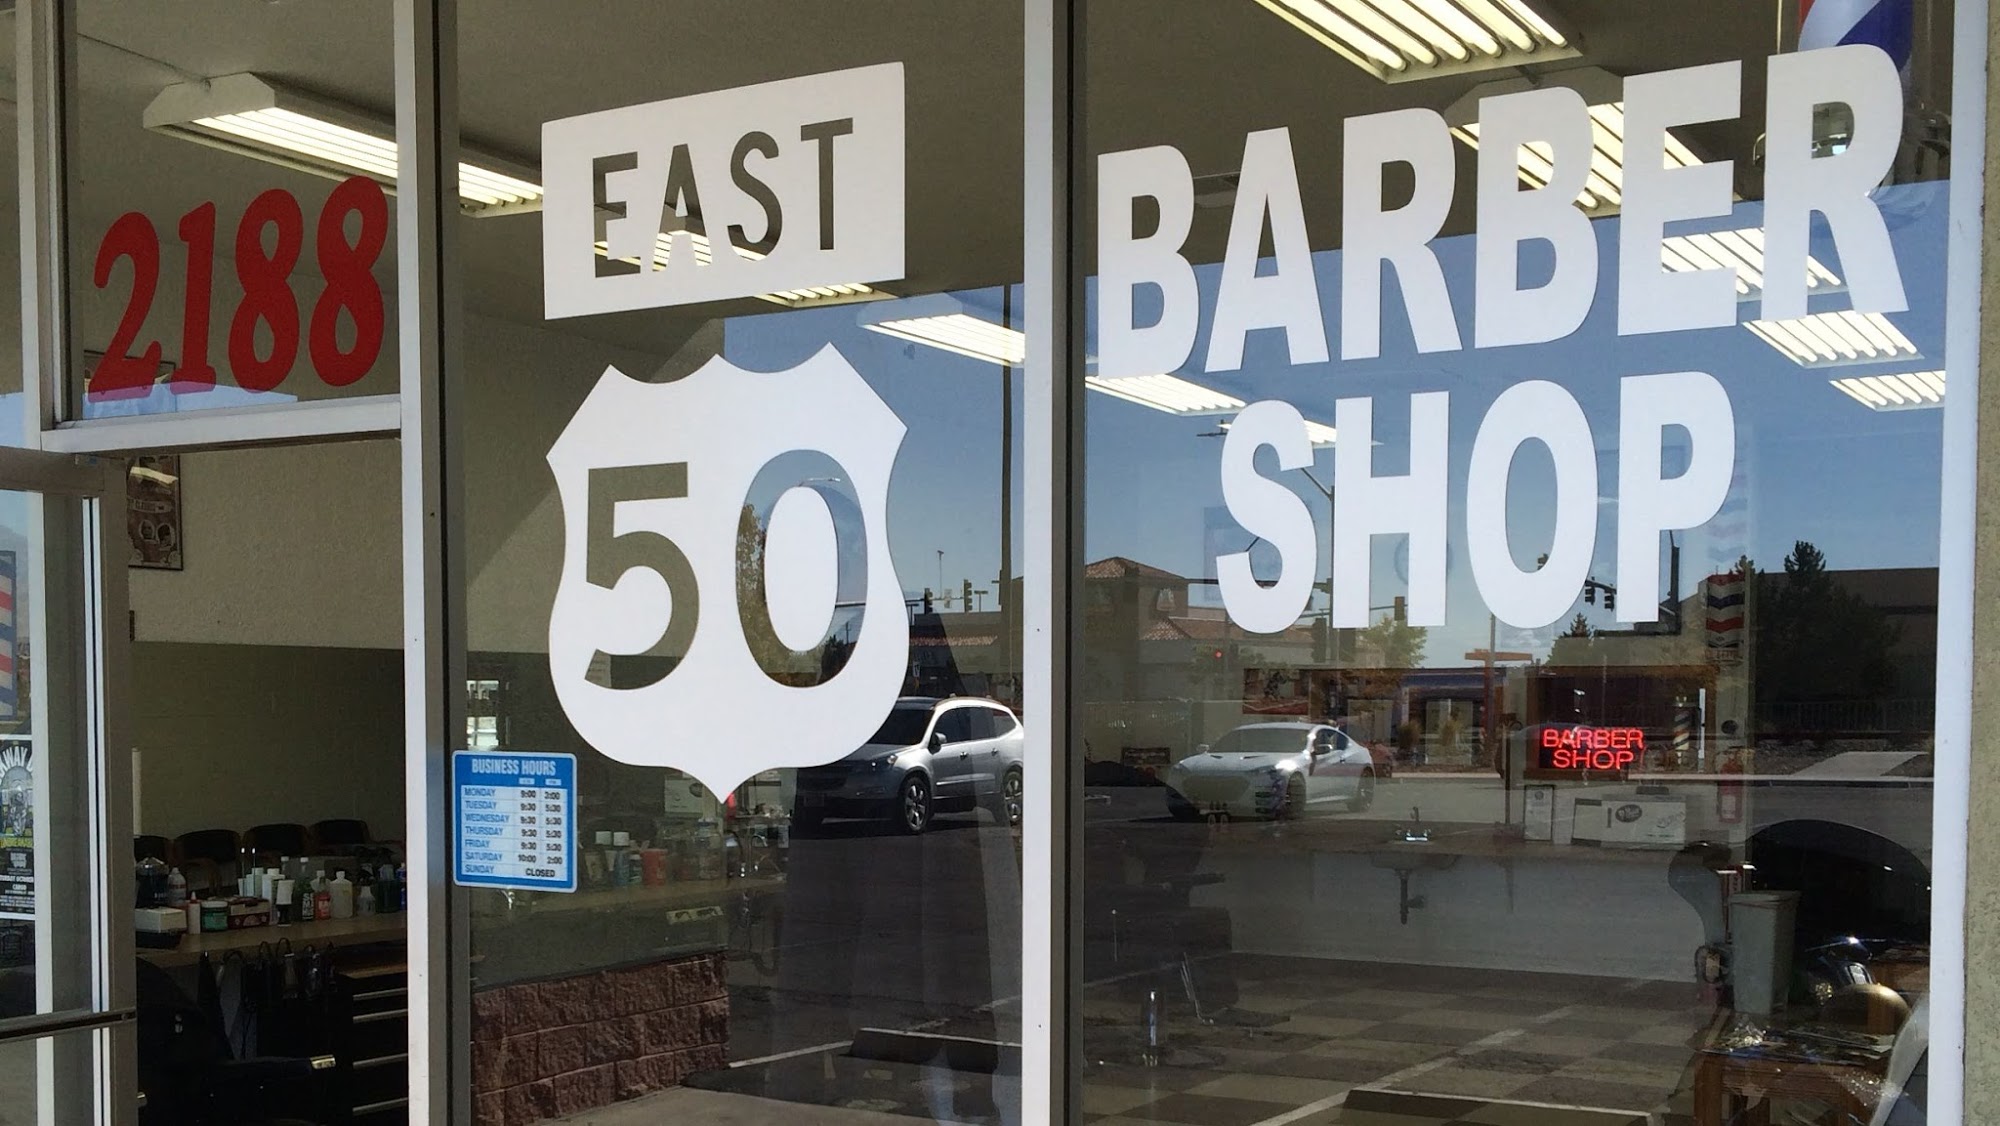 East 50 Barber Shop